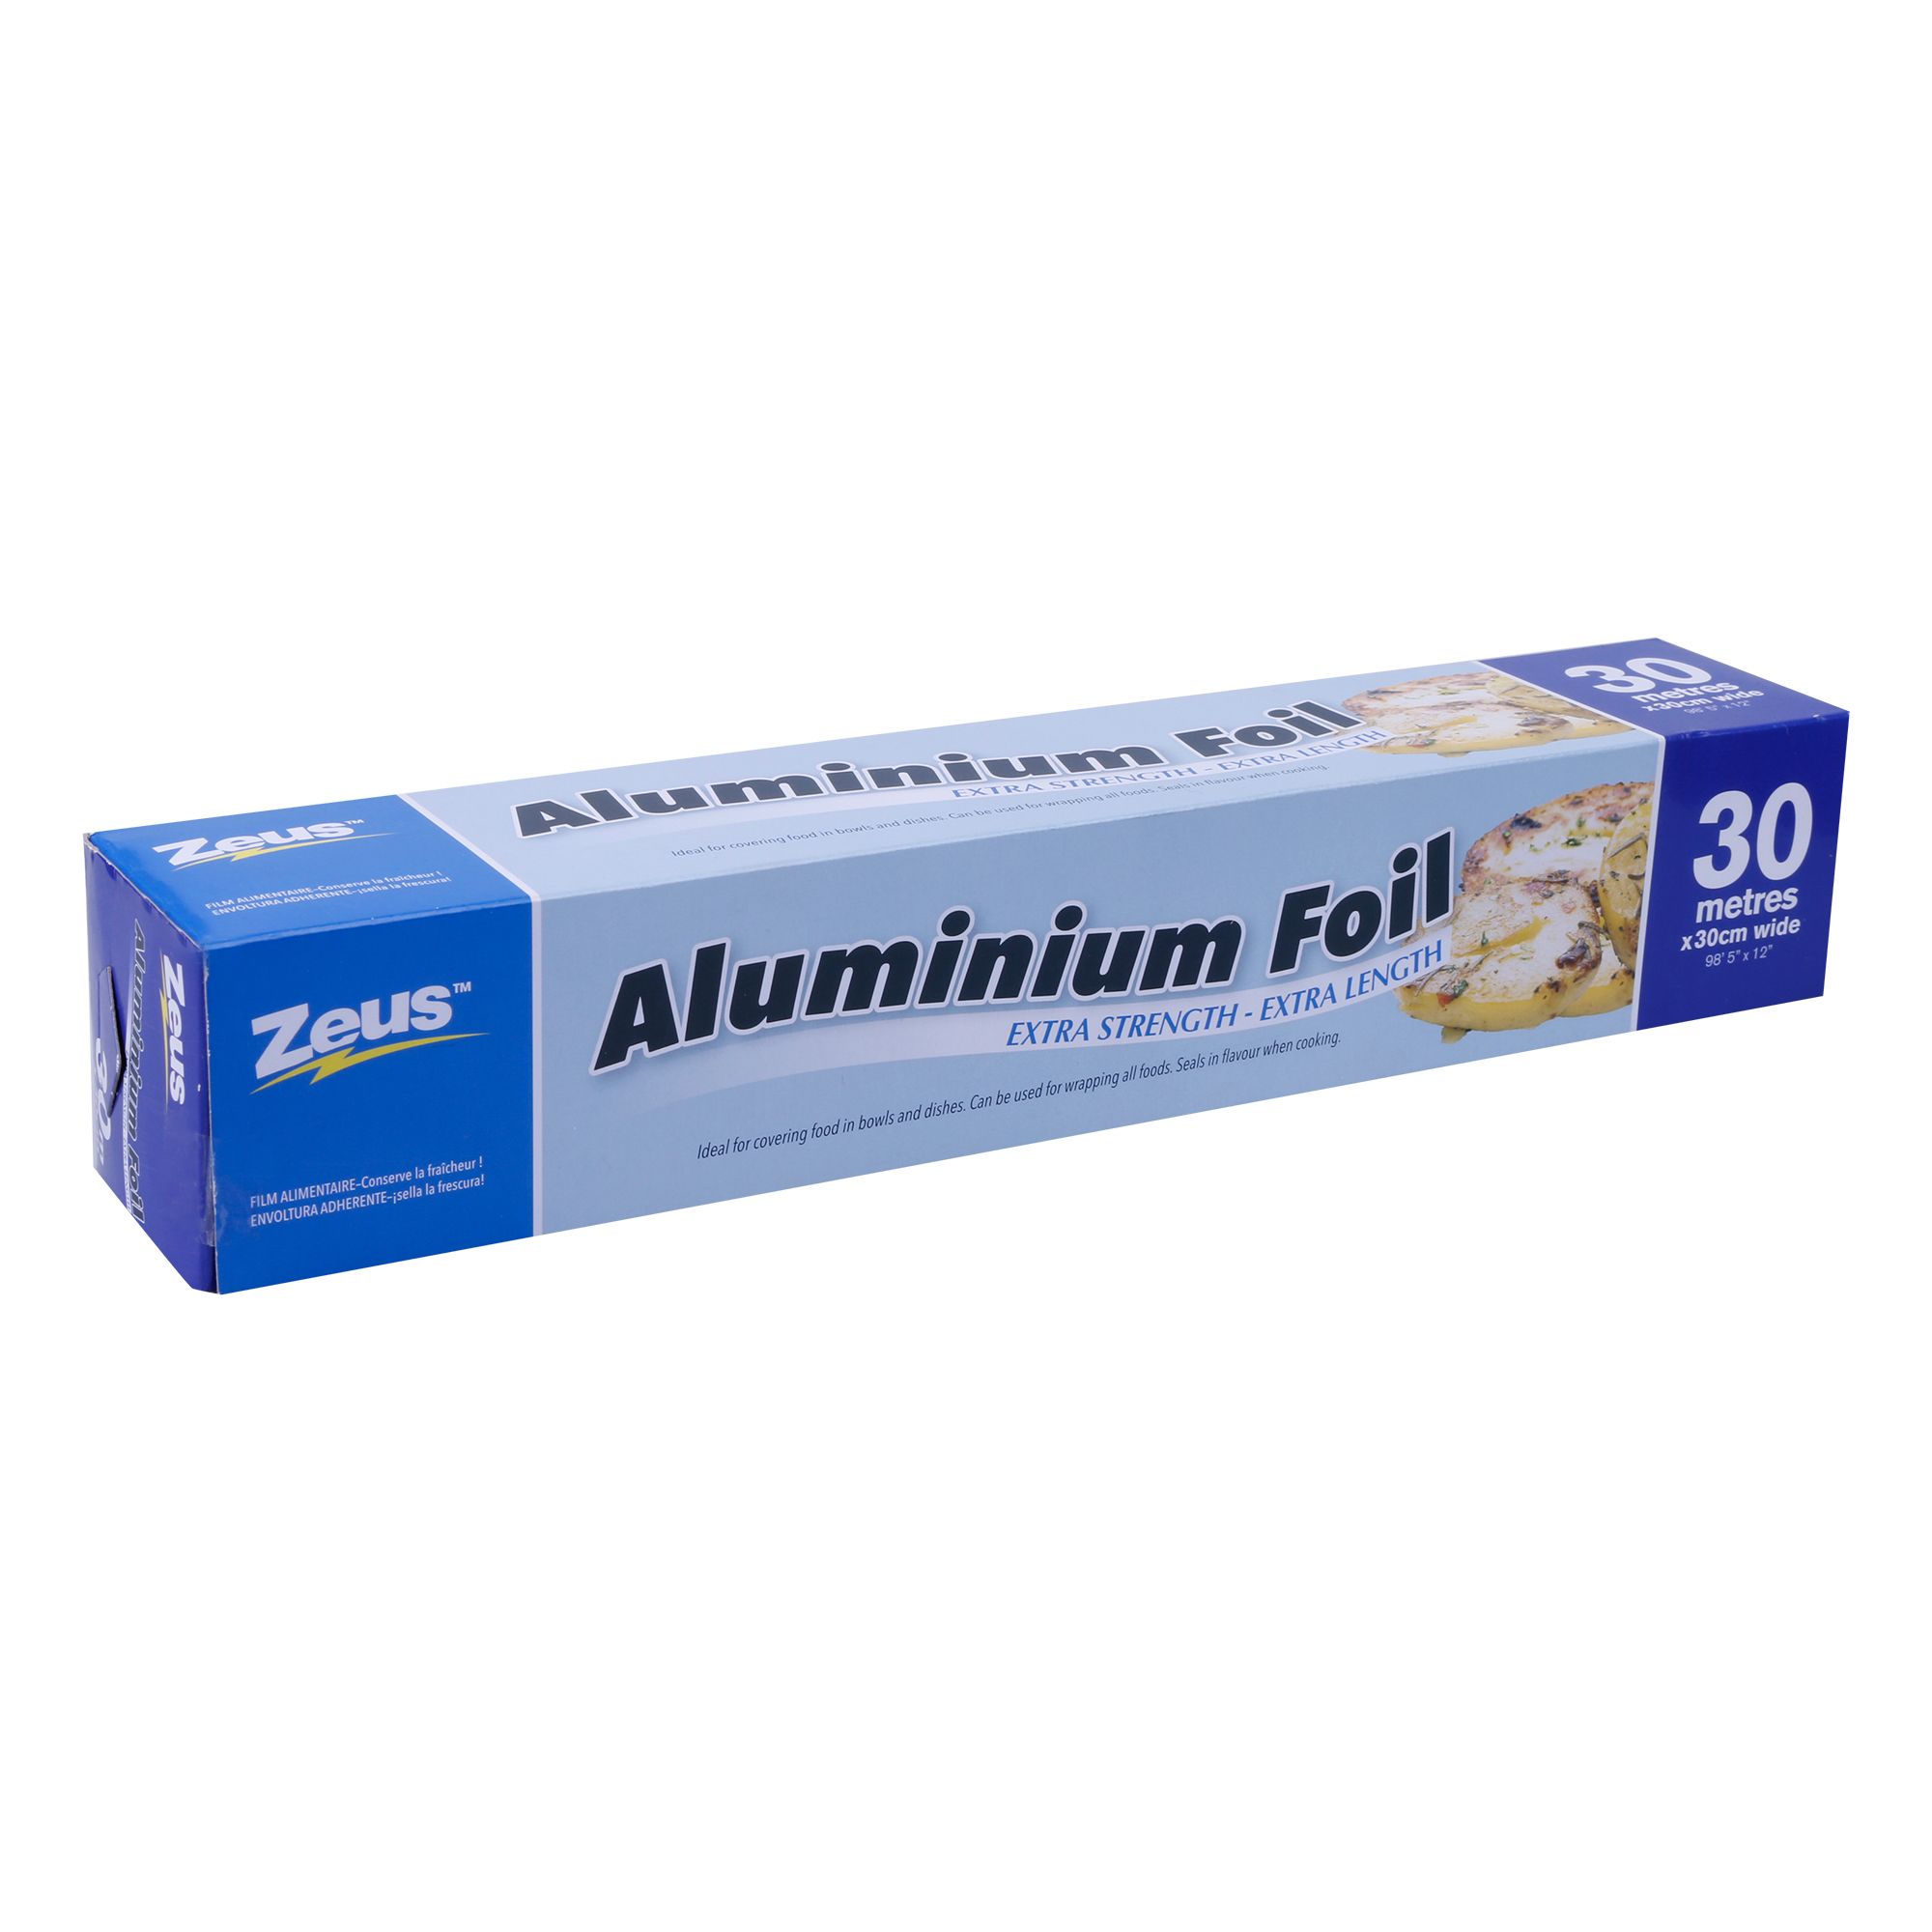 Aluminium Foil 30M